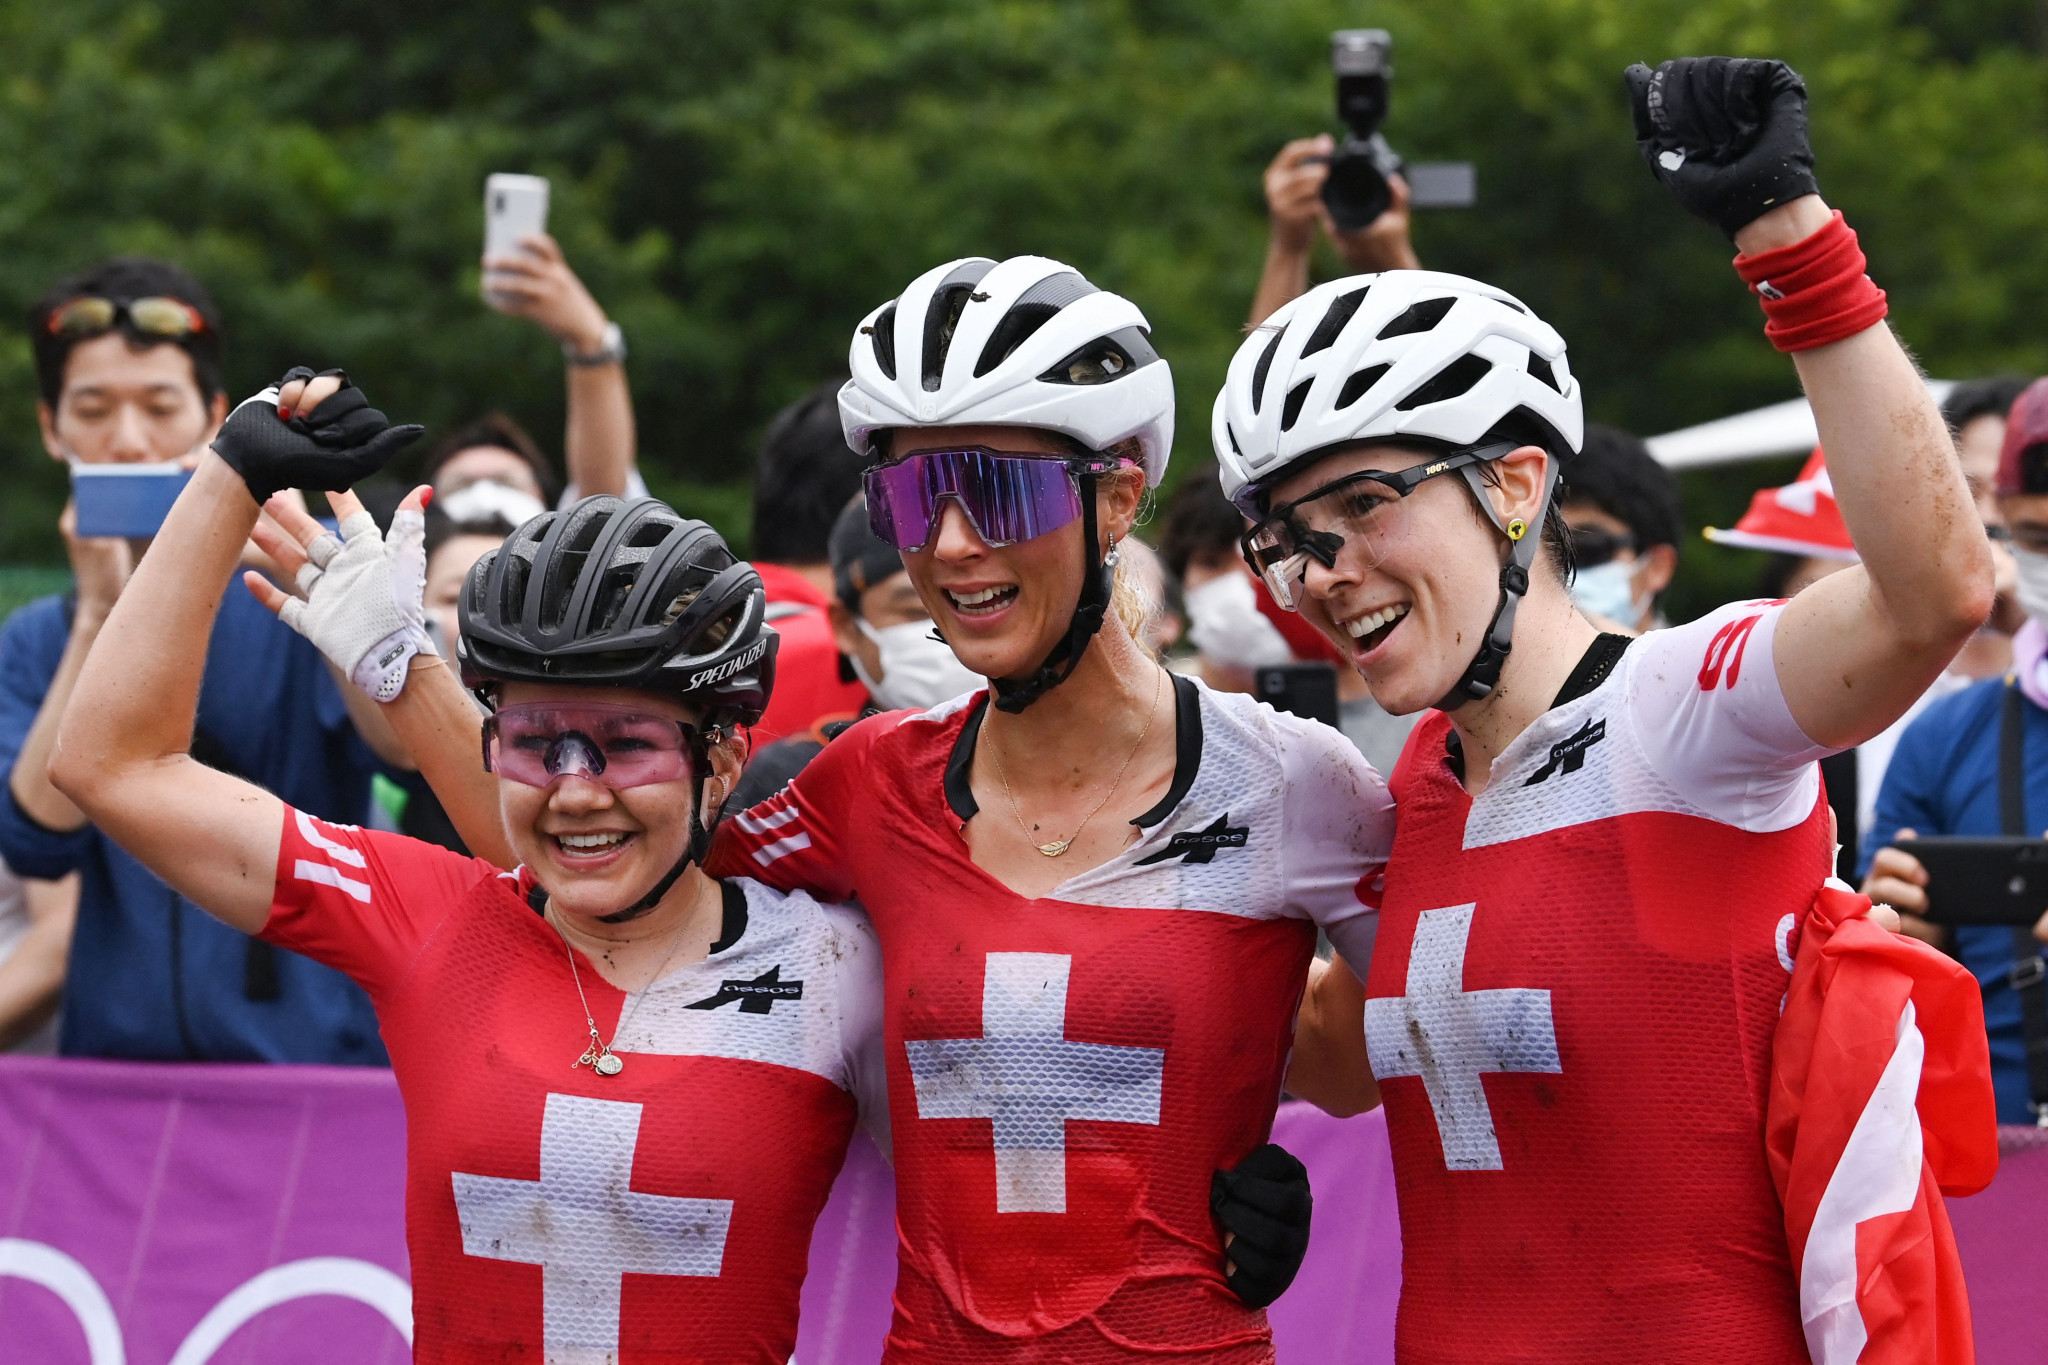 Switzerland swept the women's mountain bike podium ©Getty Images